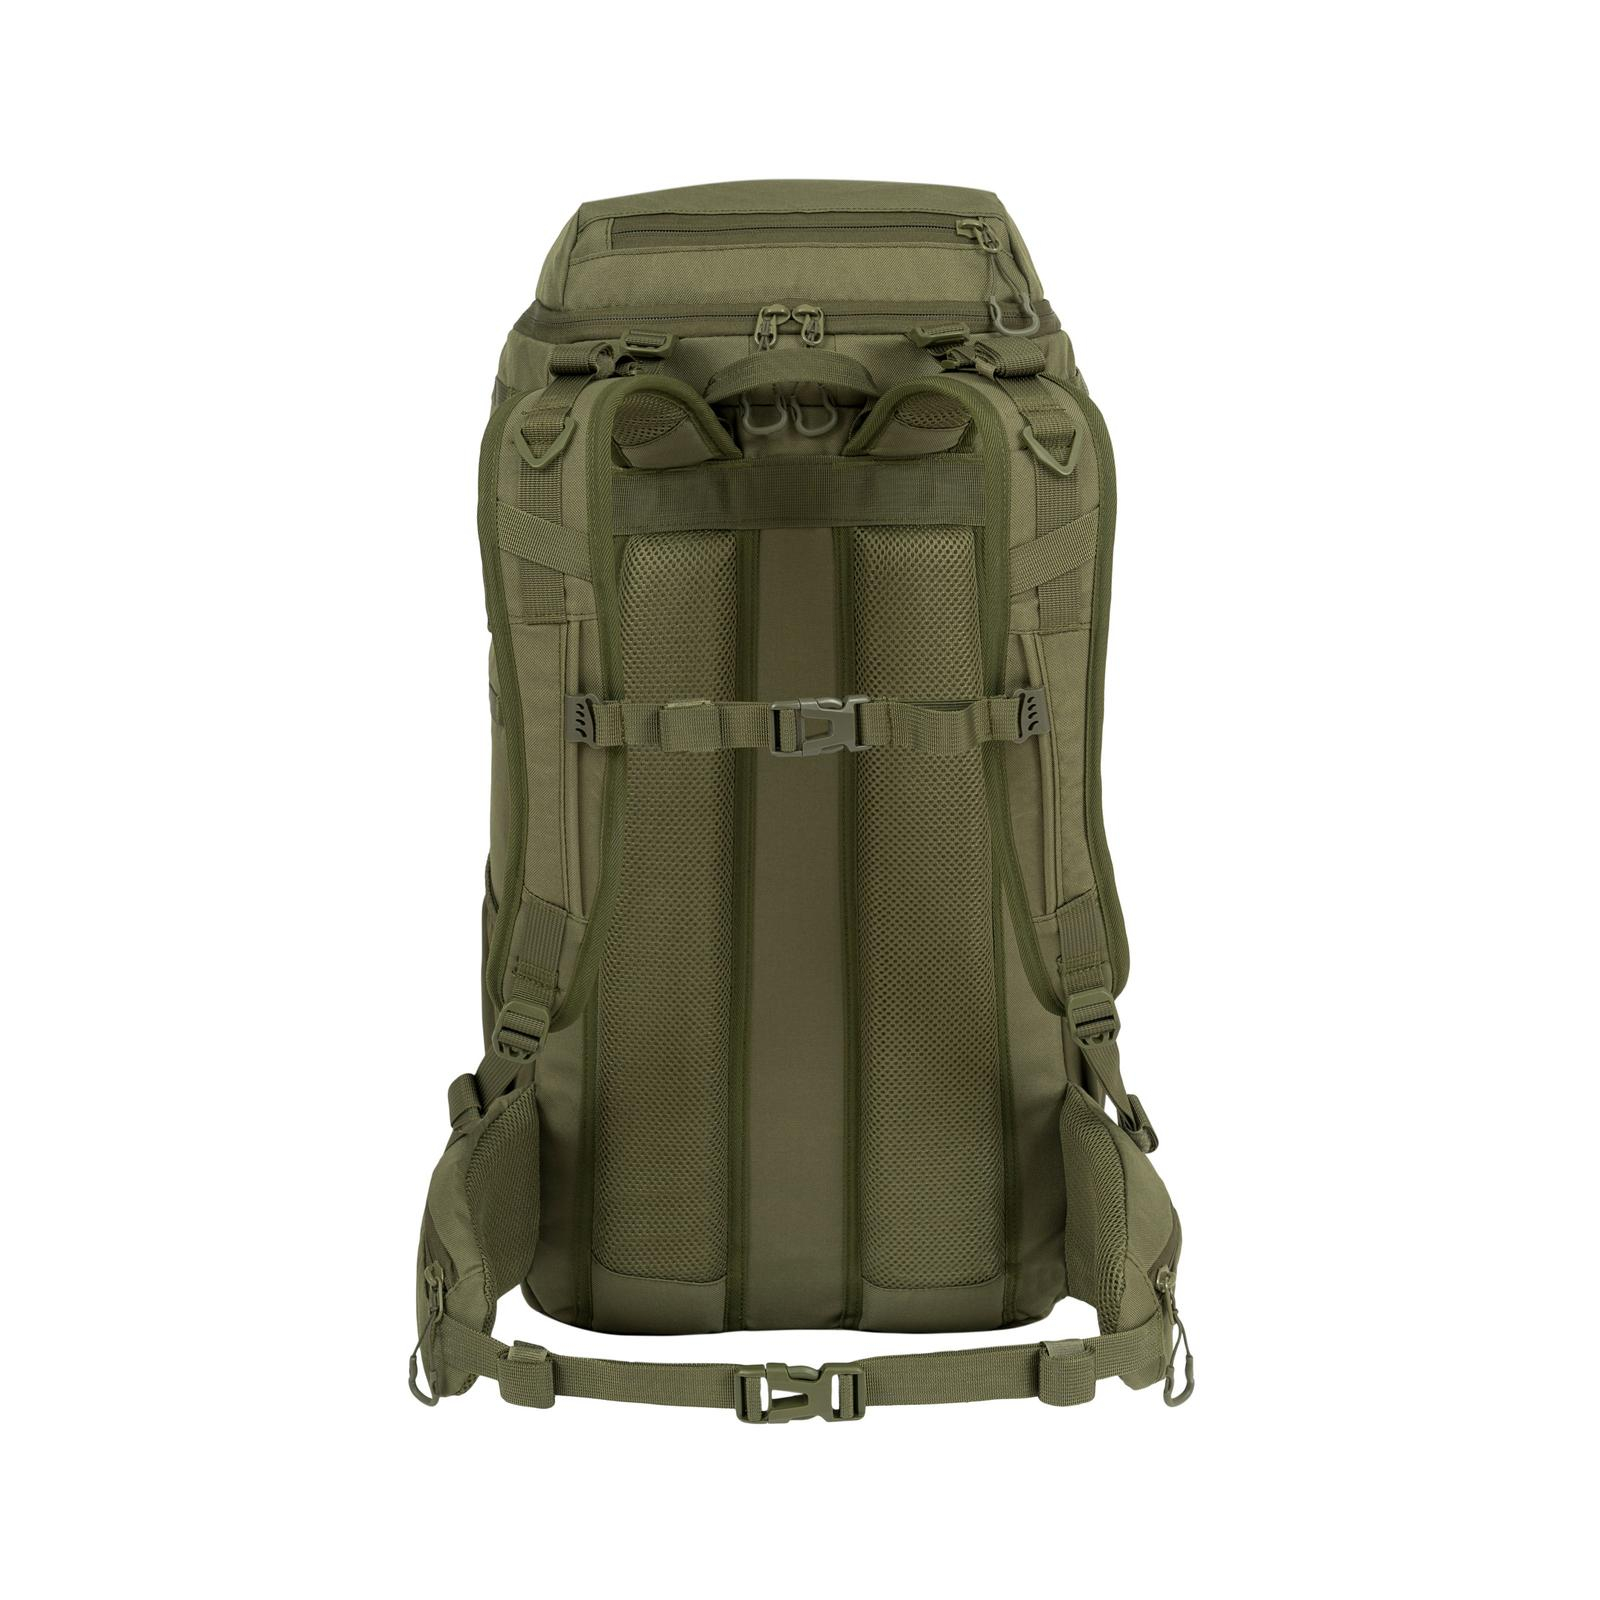 Рюкзак туристический Highlander Eagle 3 Backpack 40L Olive Green (929630) изображение 2